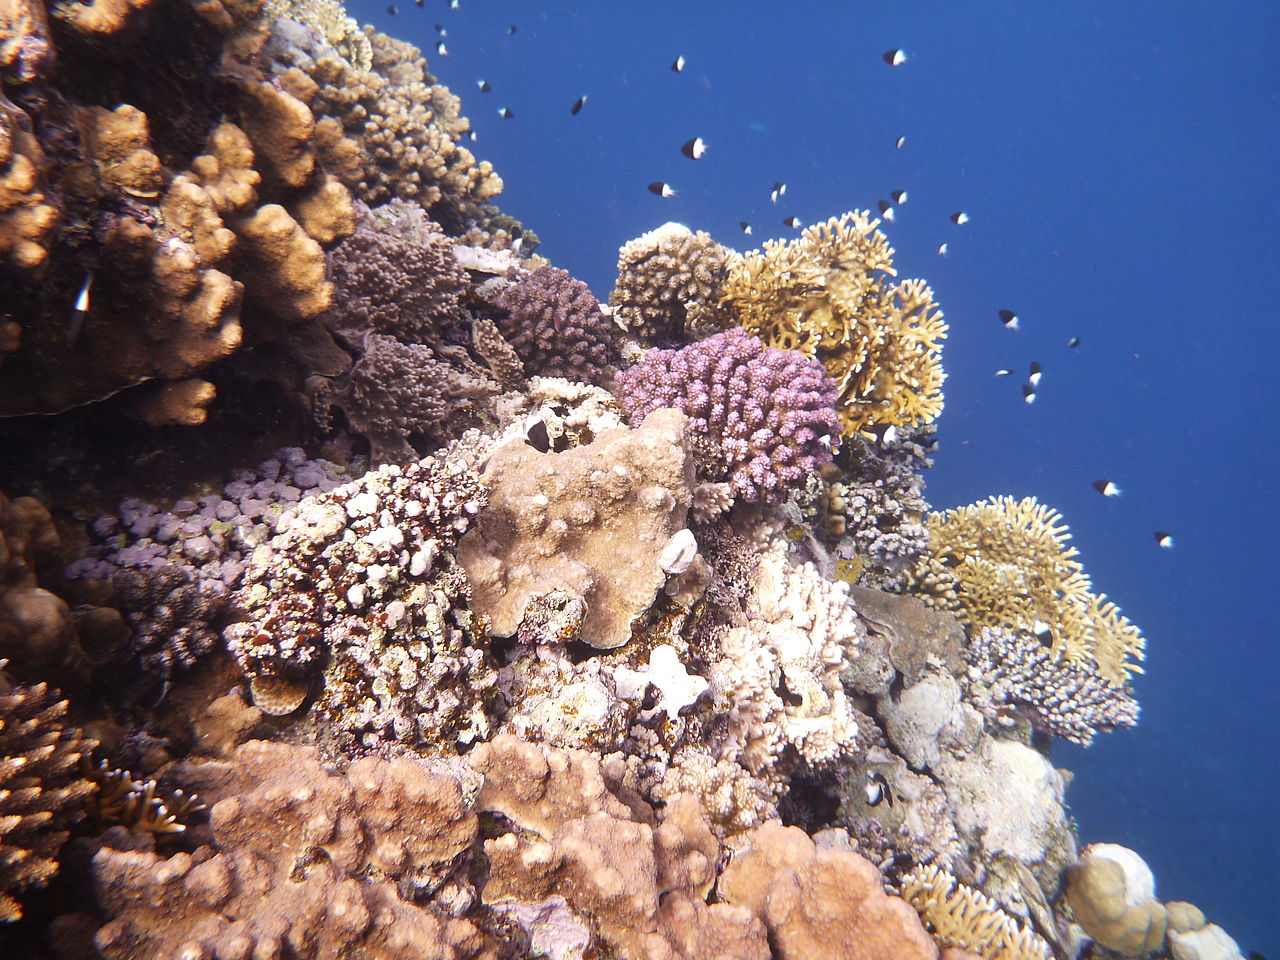 Korallen vor der Ostküste von Afrika (c) Wusel007 CC BY SA 3.0